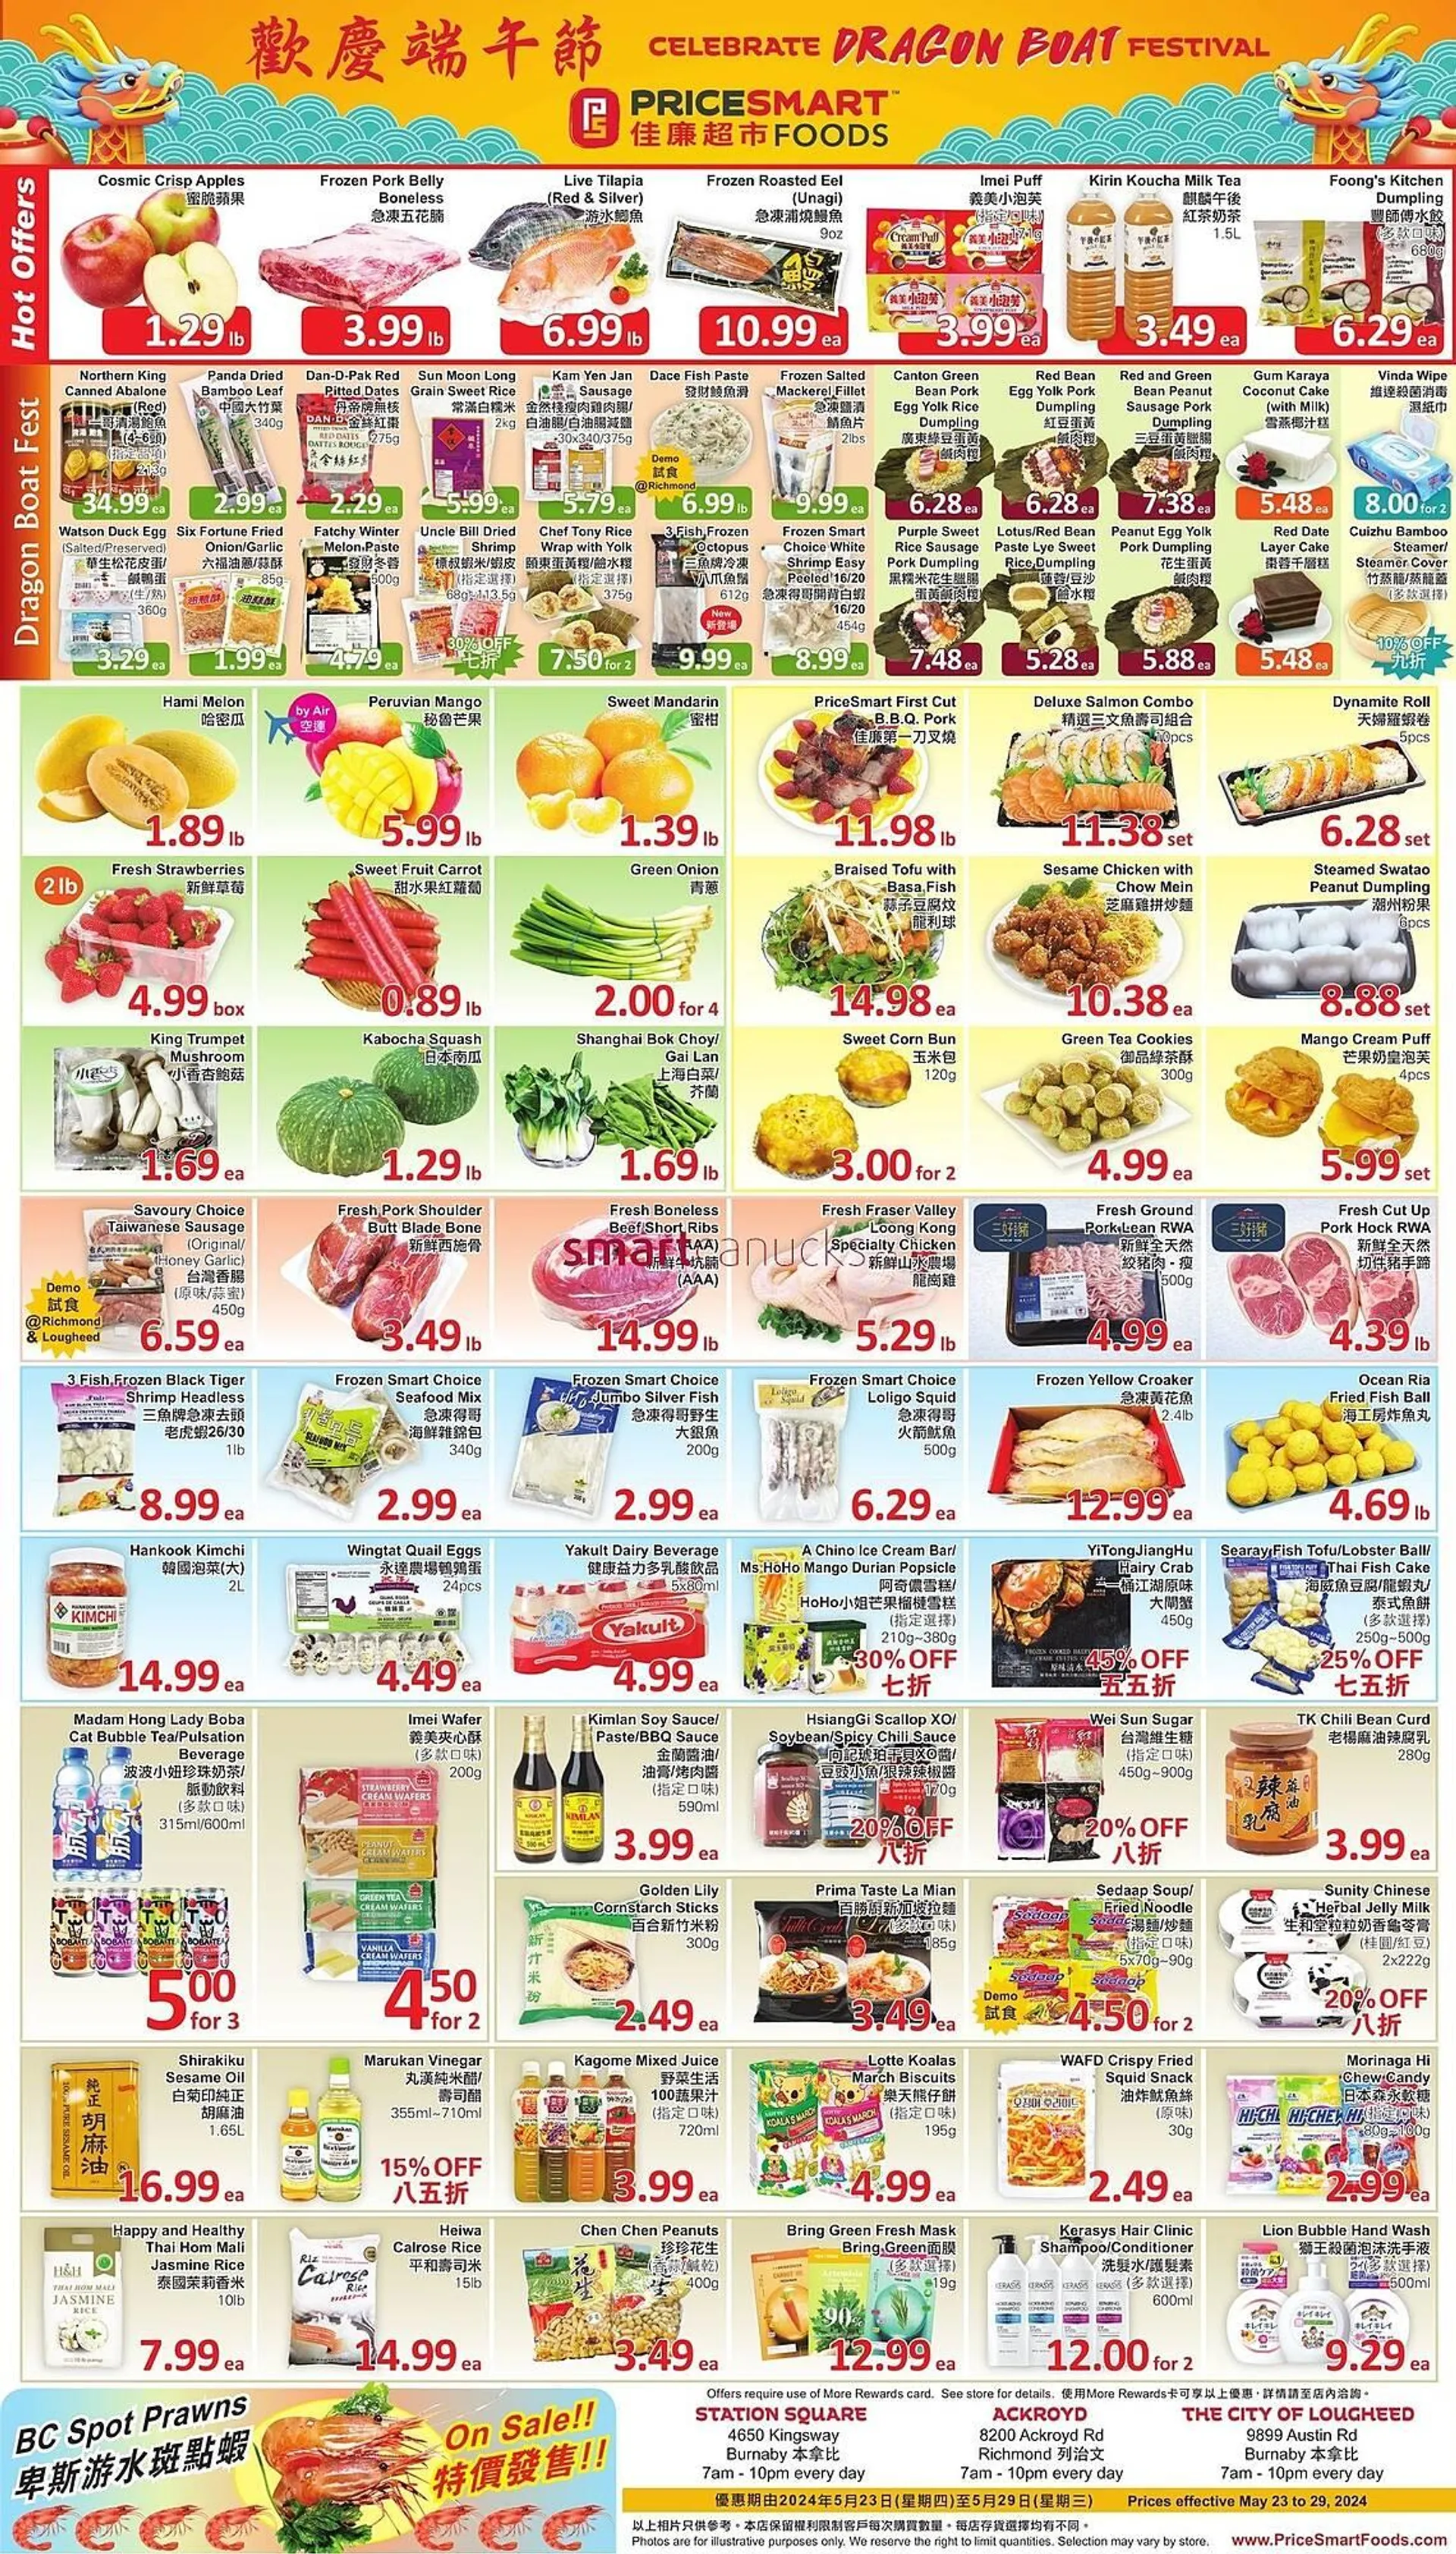 PriceSmart foods flyer - 1